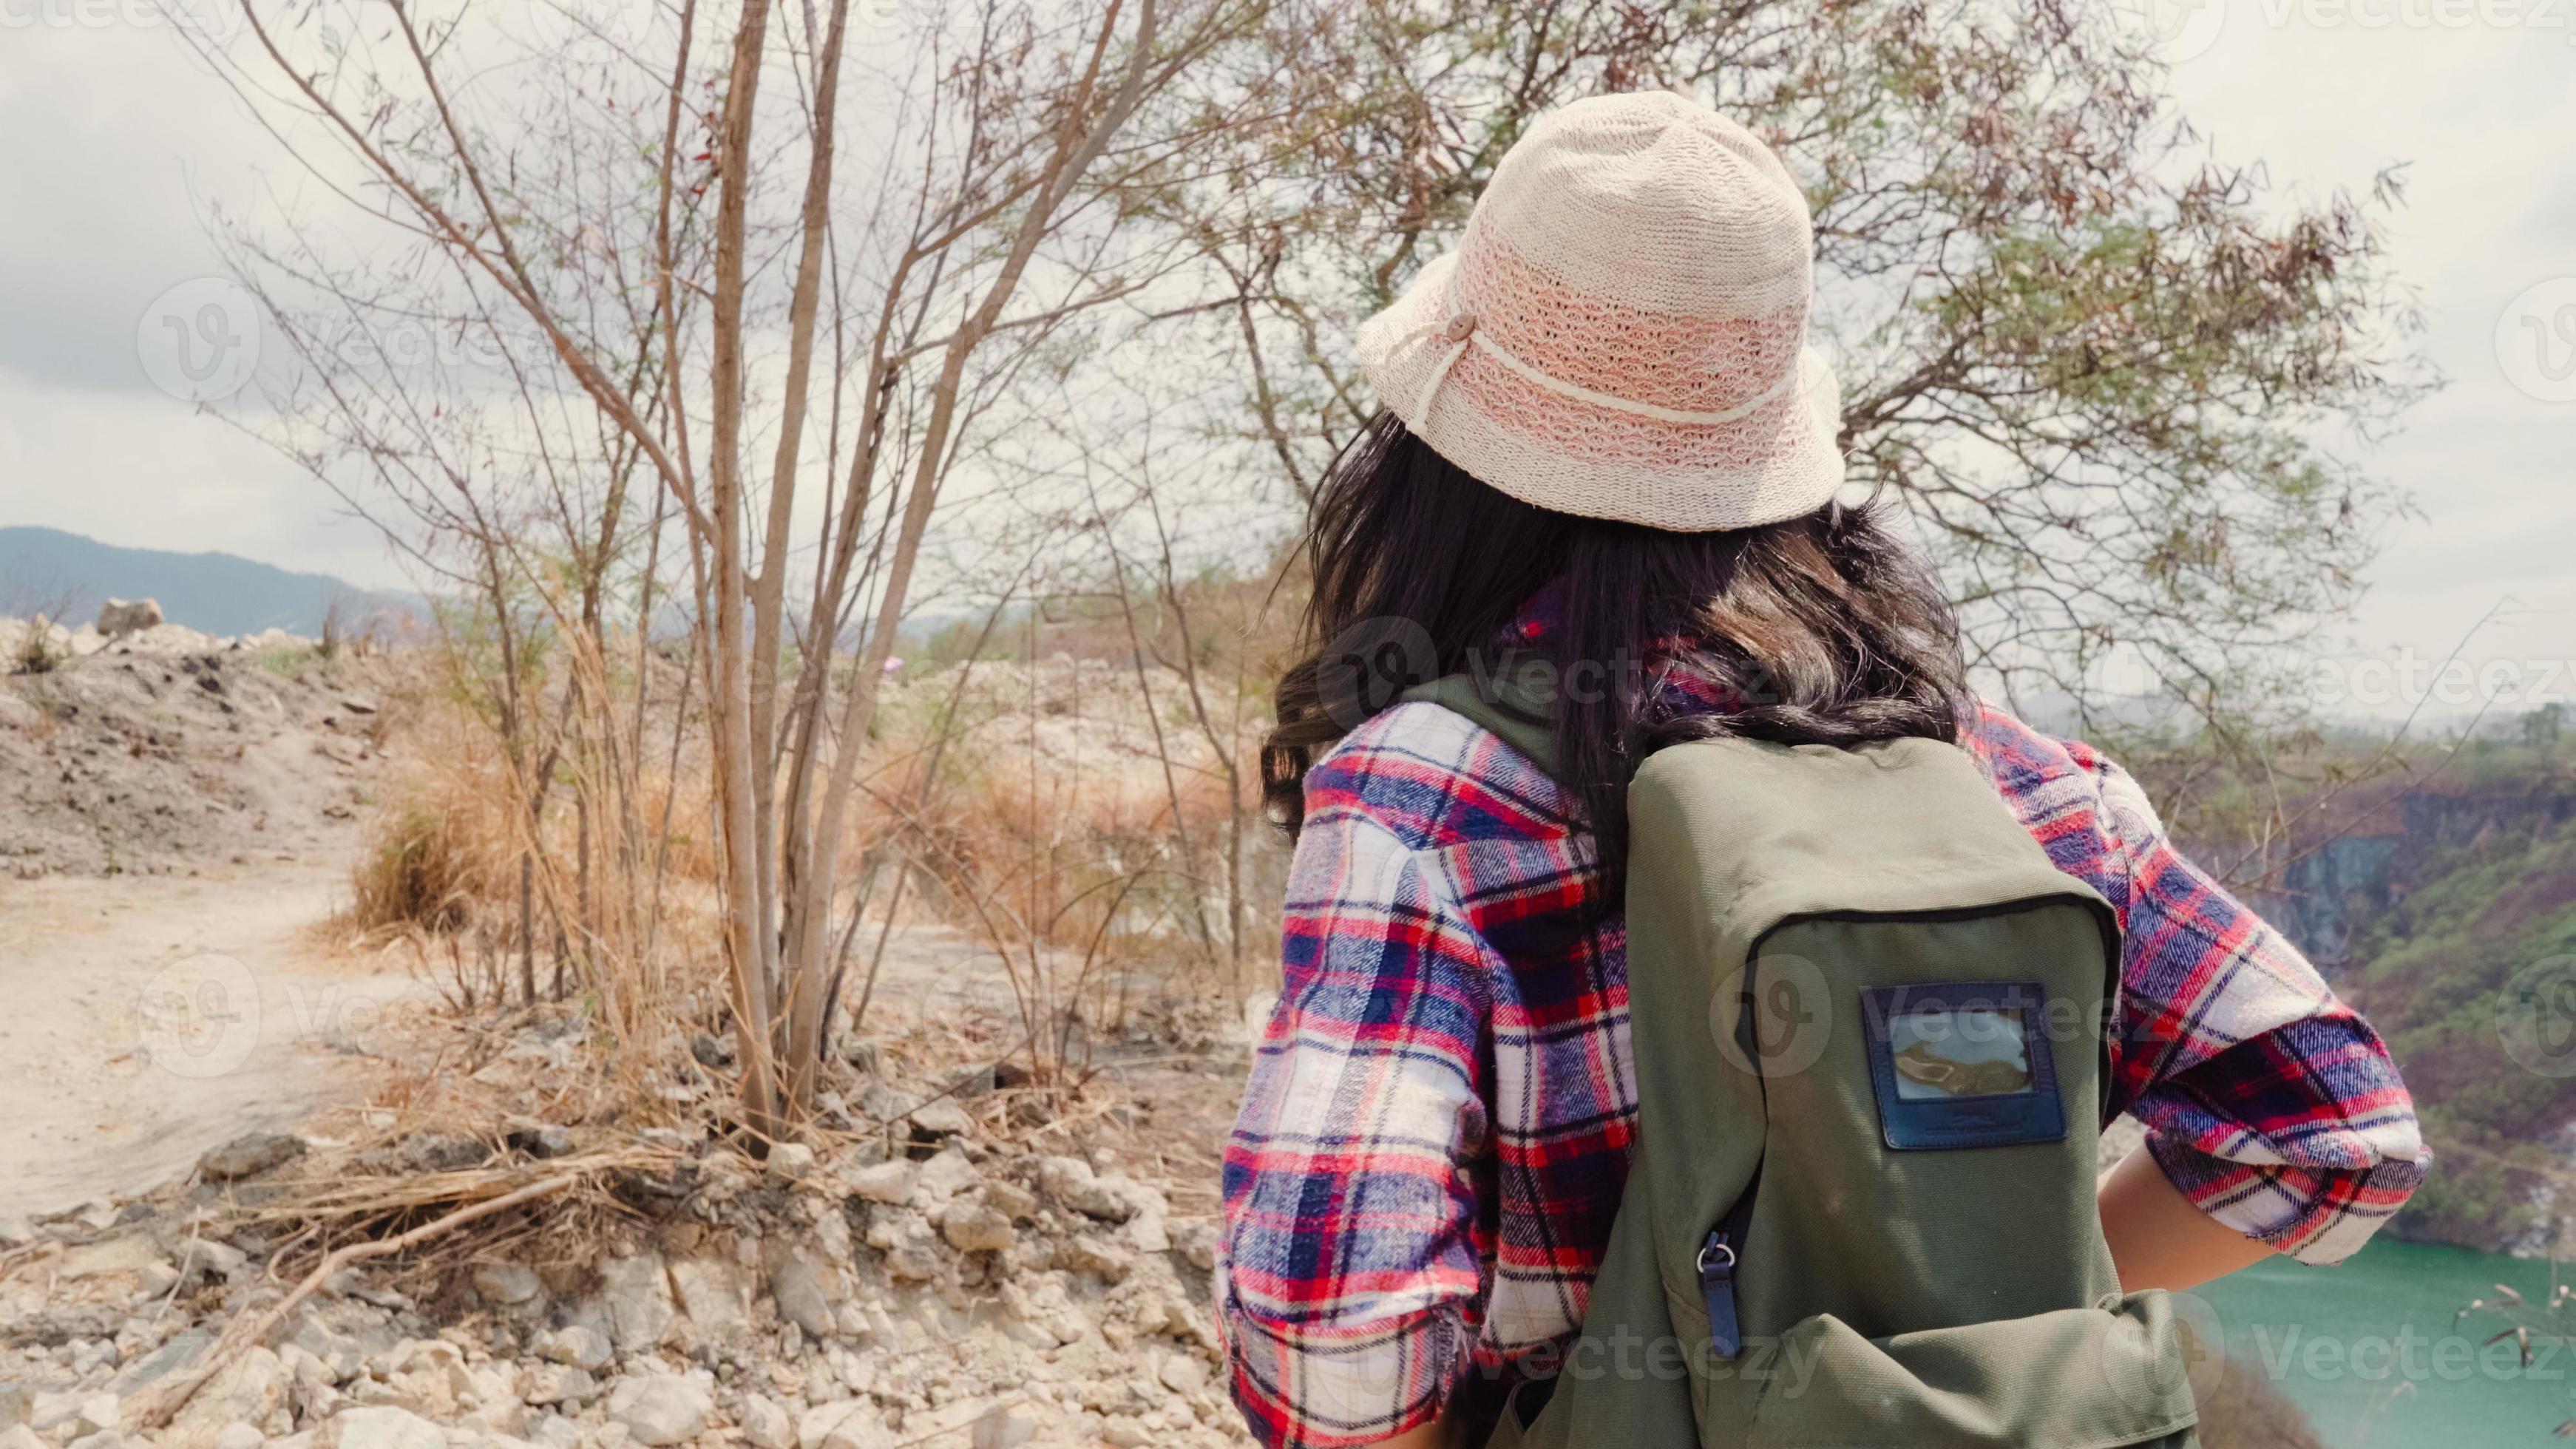 vandrare asiatisk backpackerskvinna som går till toppen av berget, kvinnan njuter av sin semester på vandringsäventyr och känner sig fri. livsstilskvinnor reser och kopplar av i fritidskoncept. foto